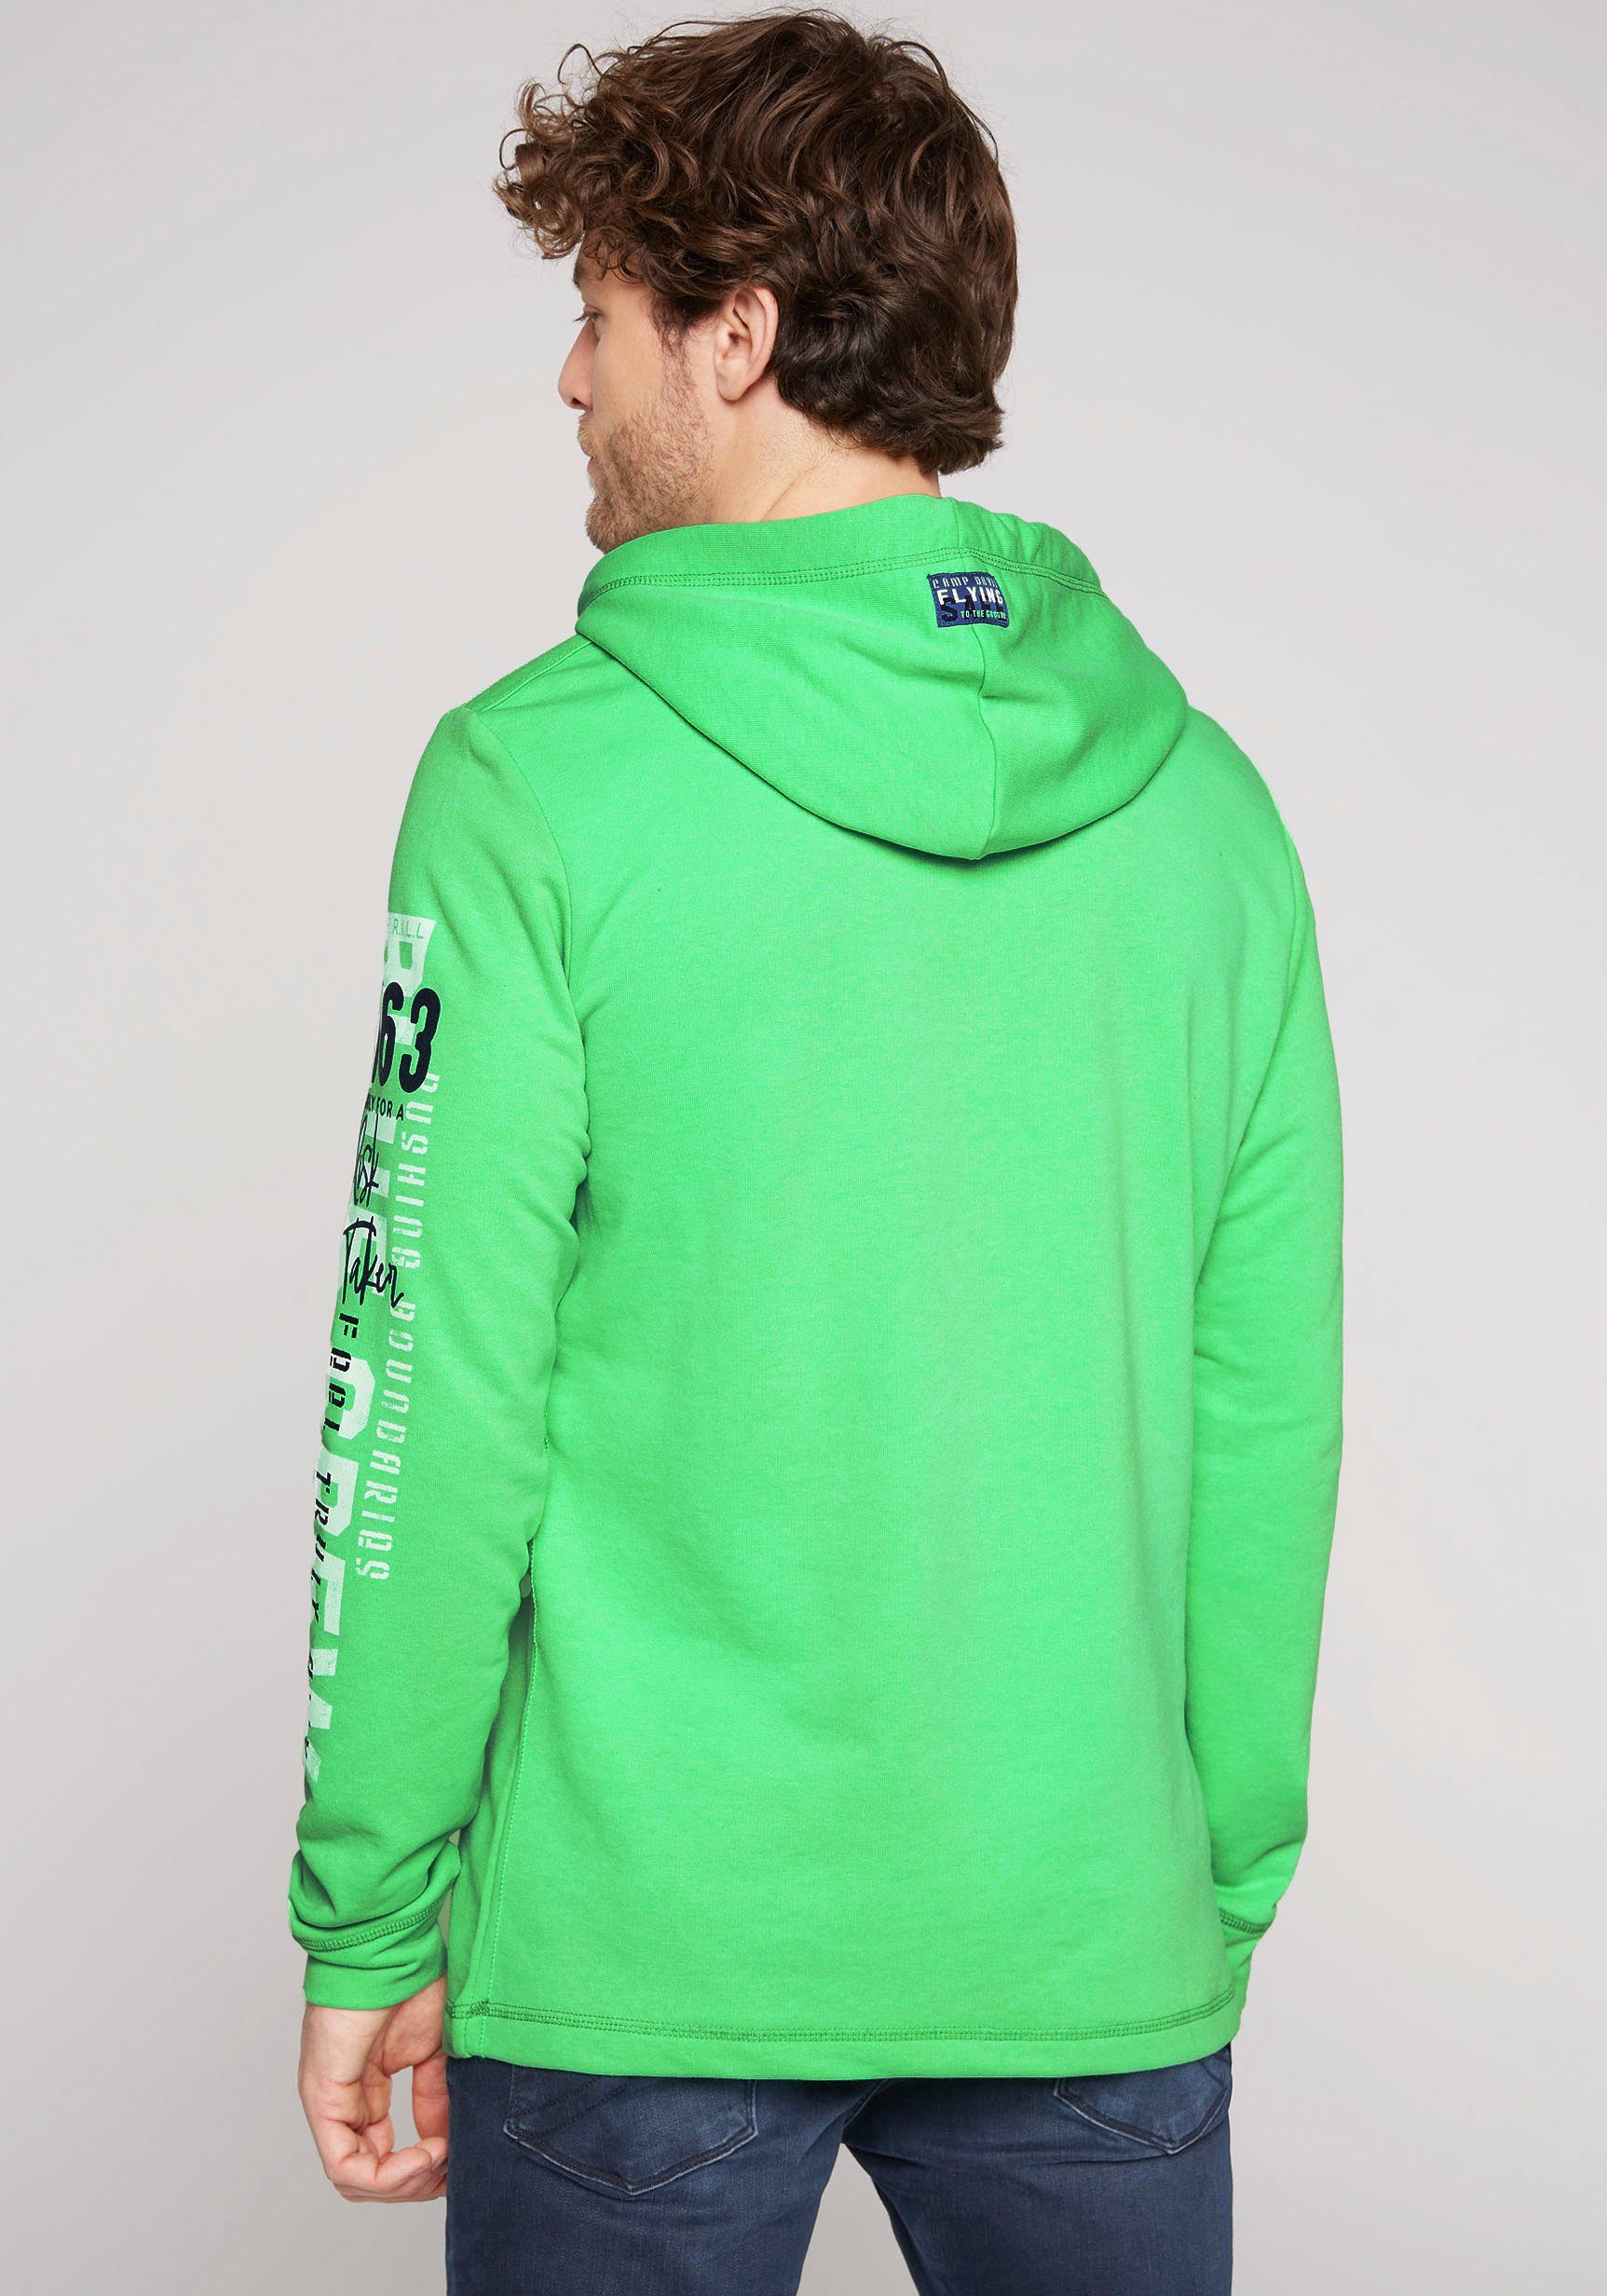 electric Label mit Kapuze green der Kapuzensweatshirt CAMP an Patch DAVID